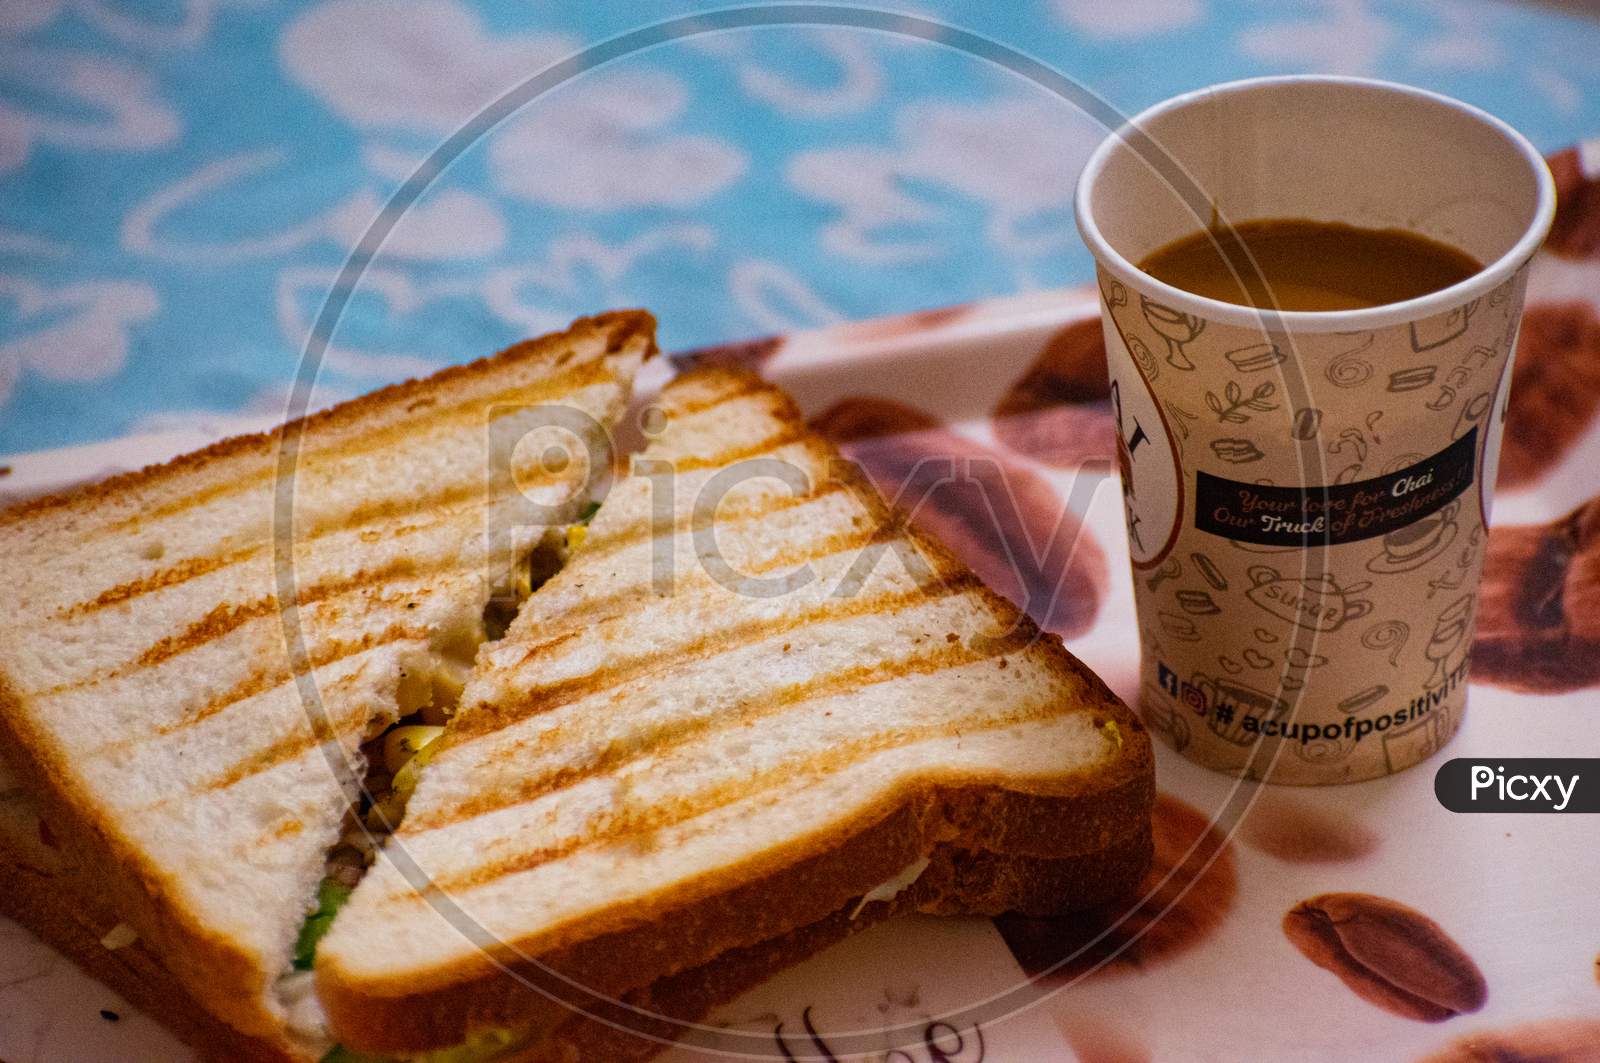 Tea & Sandwich